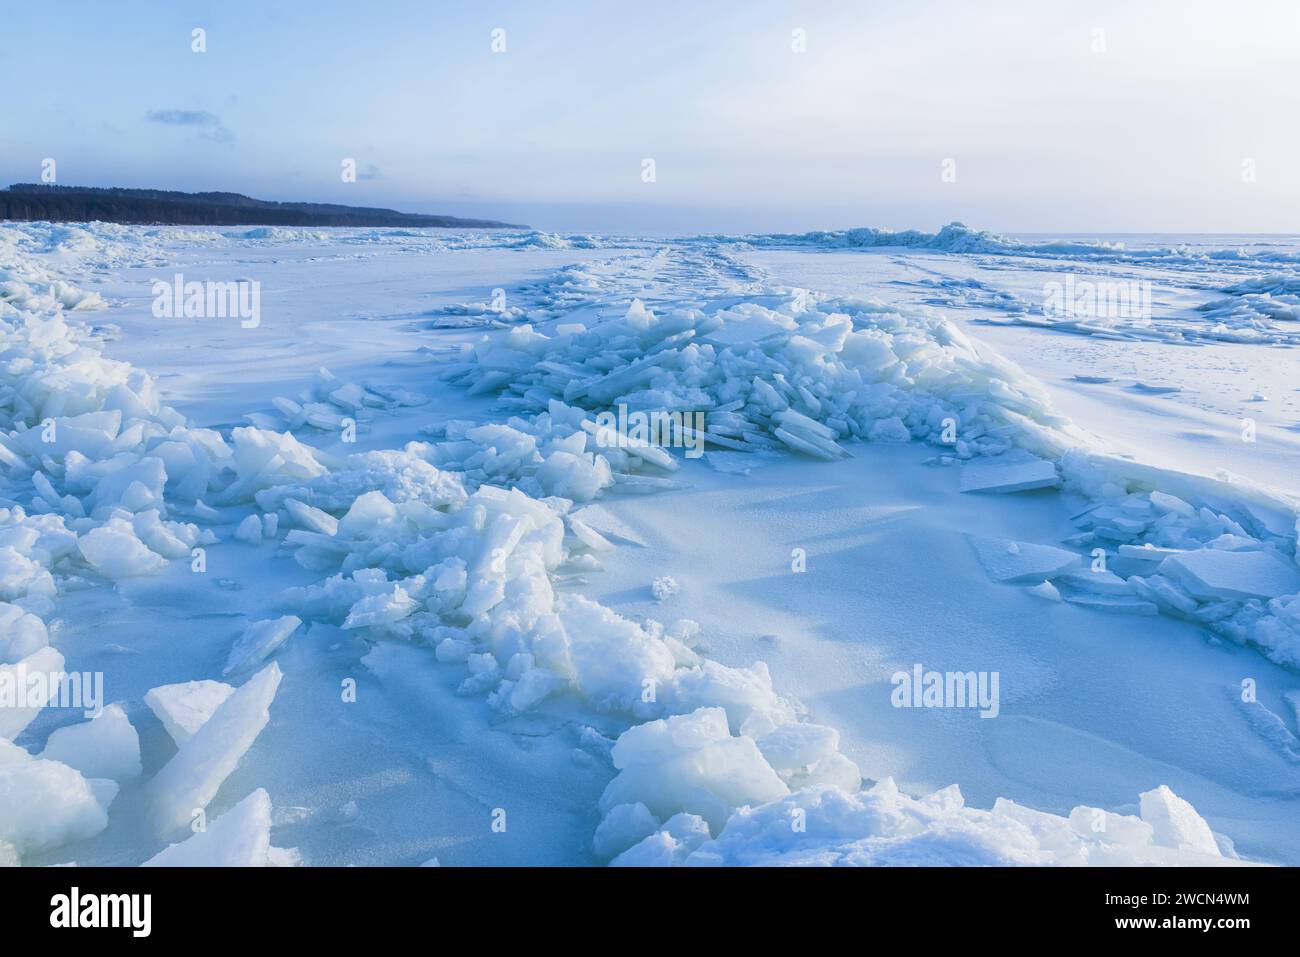 Paysage avec mer Baltique gelée sur une journée ensoleillée d'hiver. Bosses de glace couvertes de neige Banque D'Images